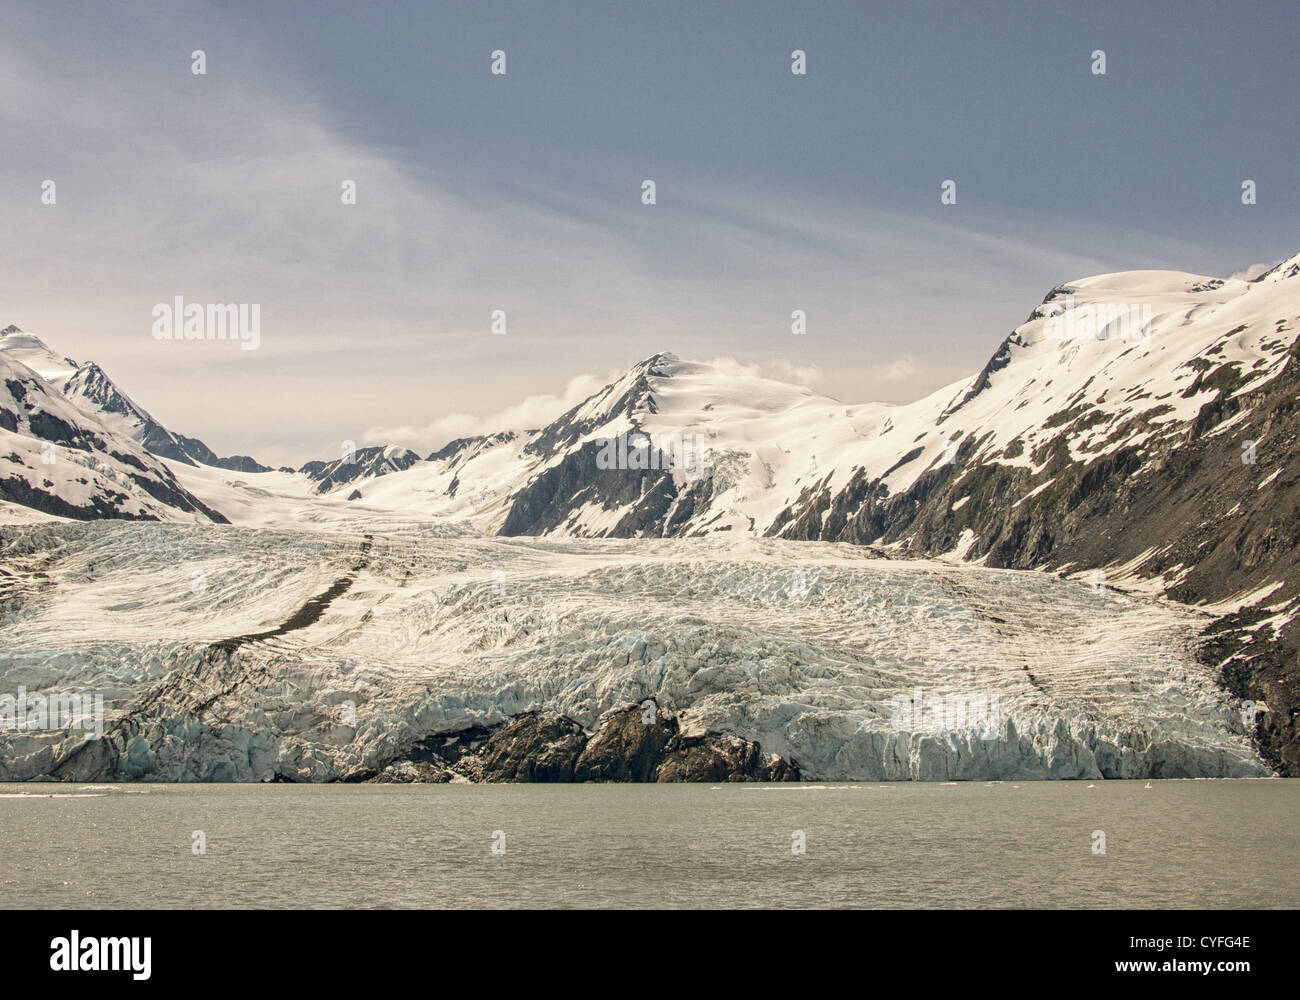 Junio 29, 2012 - Península Kenai, Alaska, EE.UU. - En la Península Kenai dentro del Bosque Nacional Chugach, rodeado por las formidables montañas Chugach, cubierto de nieve glaciar Portage es la atracción turística más visitada en Alaska. Gran parte de la cara del glaciar se encuentra en el agua y se extiende hacia abajo más de 100 pies en Portage Lake. Durante el siglo pasado, los terminus del glaciar ha retrocedido casi 5 kilómetros hasta su ubicación actual. (Crédito de la Imagen: © Arnold Drapkin/ZUMAPRESS.com) Foto de stock